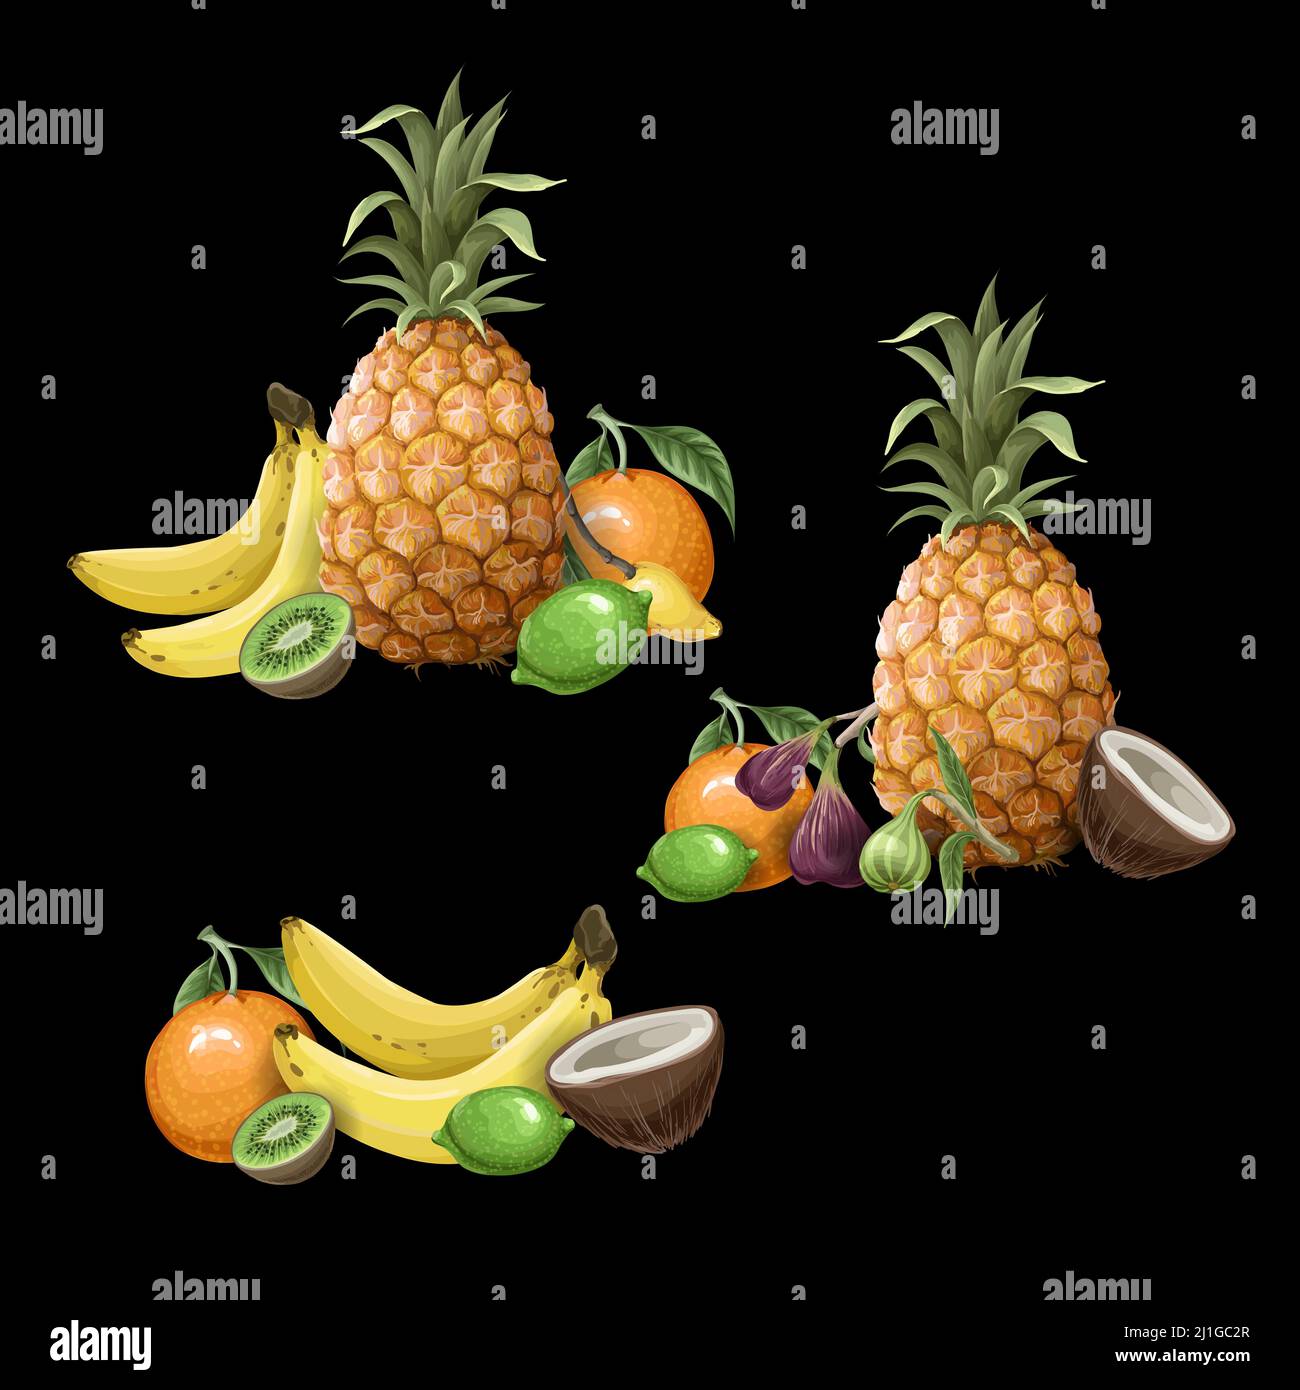 Nahtloses Muster mitSet von tropischen Früchten wie Ananas, Orange, Feige, Banane etc. Vektor. Stock Vektor